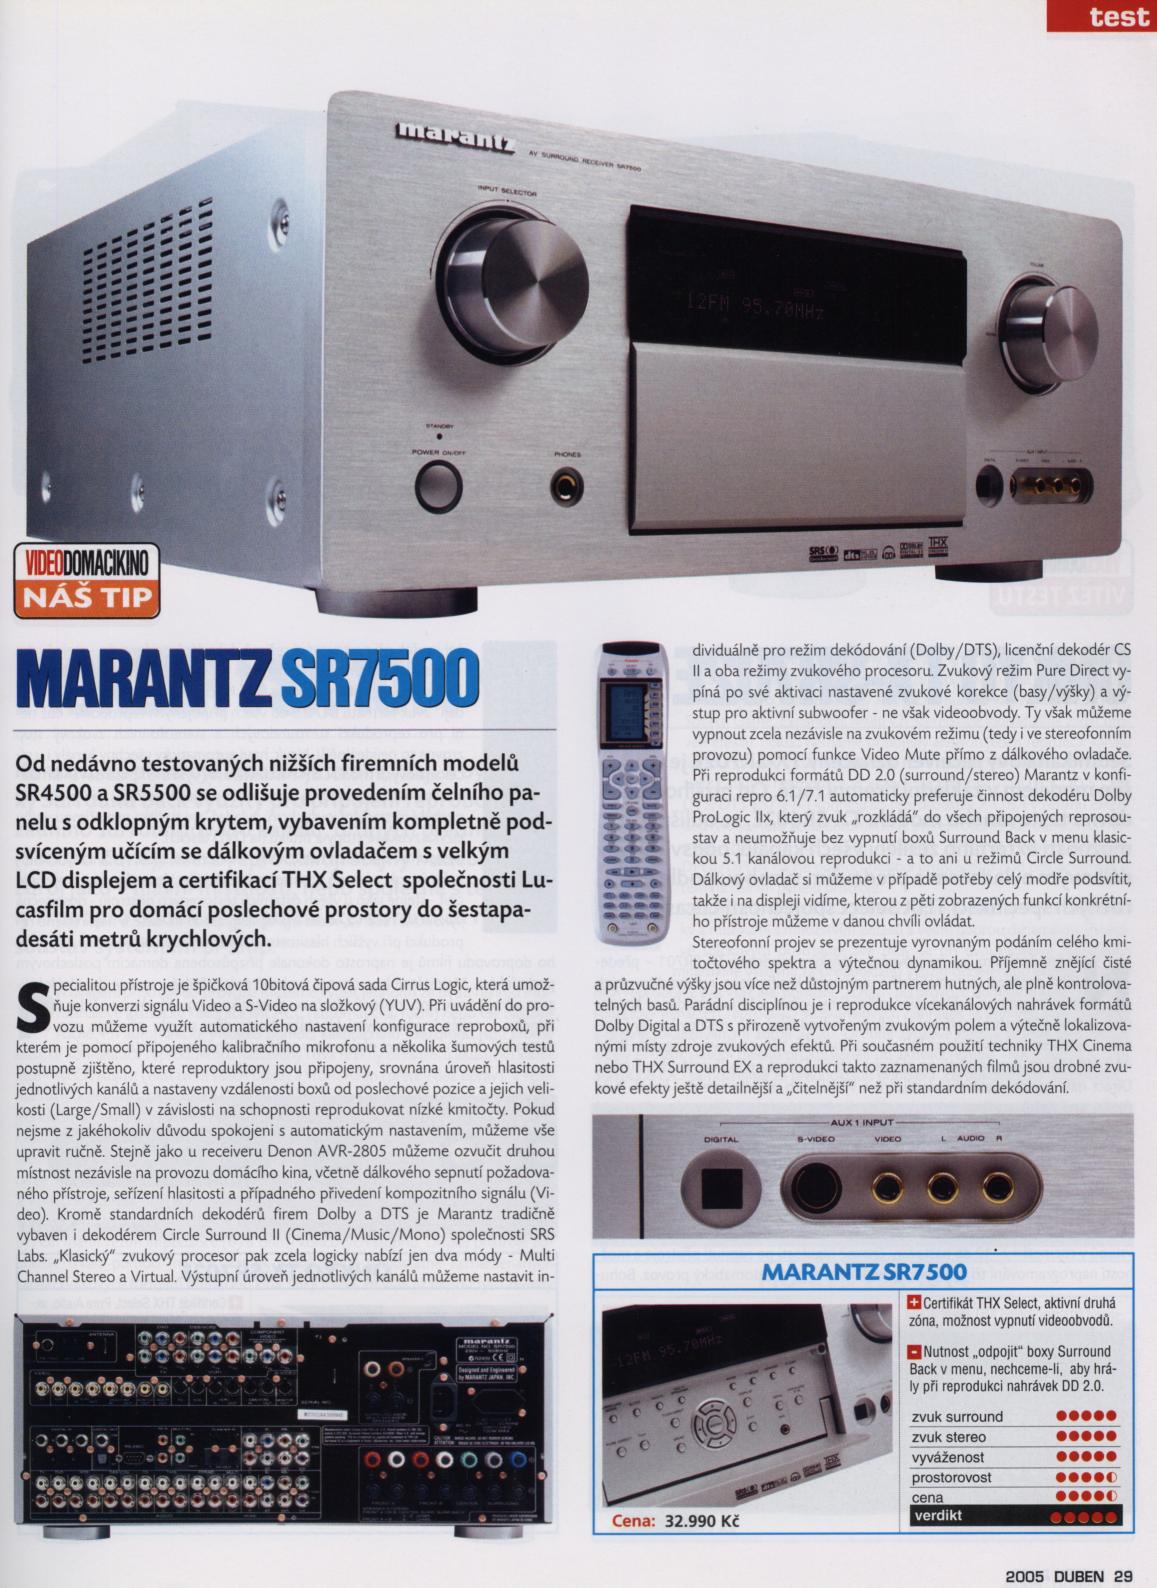 Marantz 7500